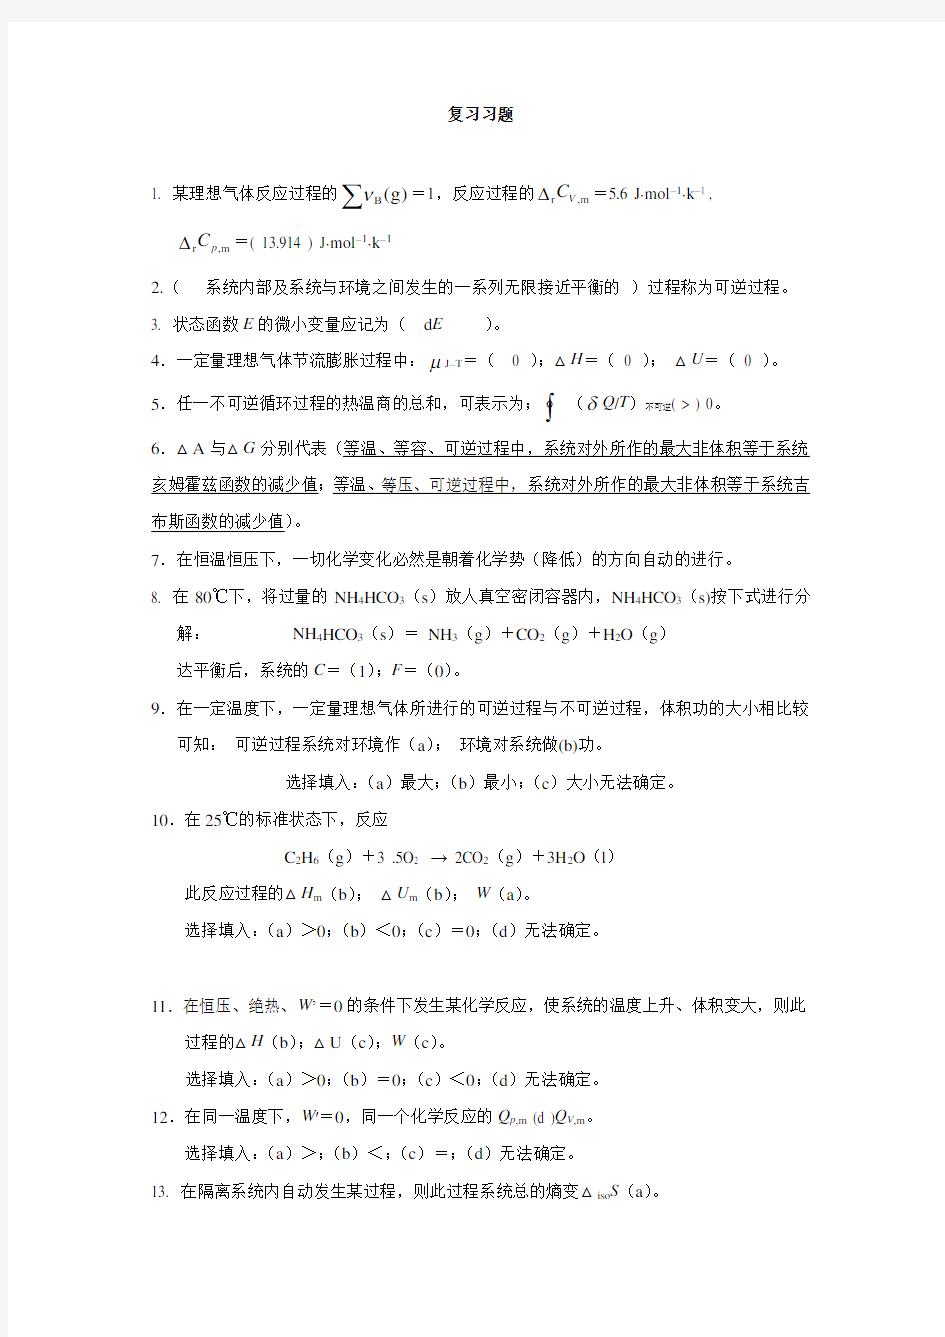 (完整版)湖南大学物理化学期末考试复习习题done